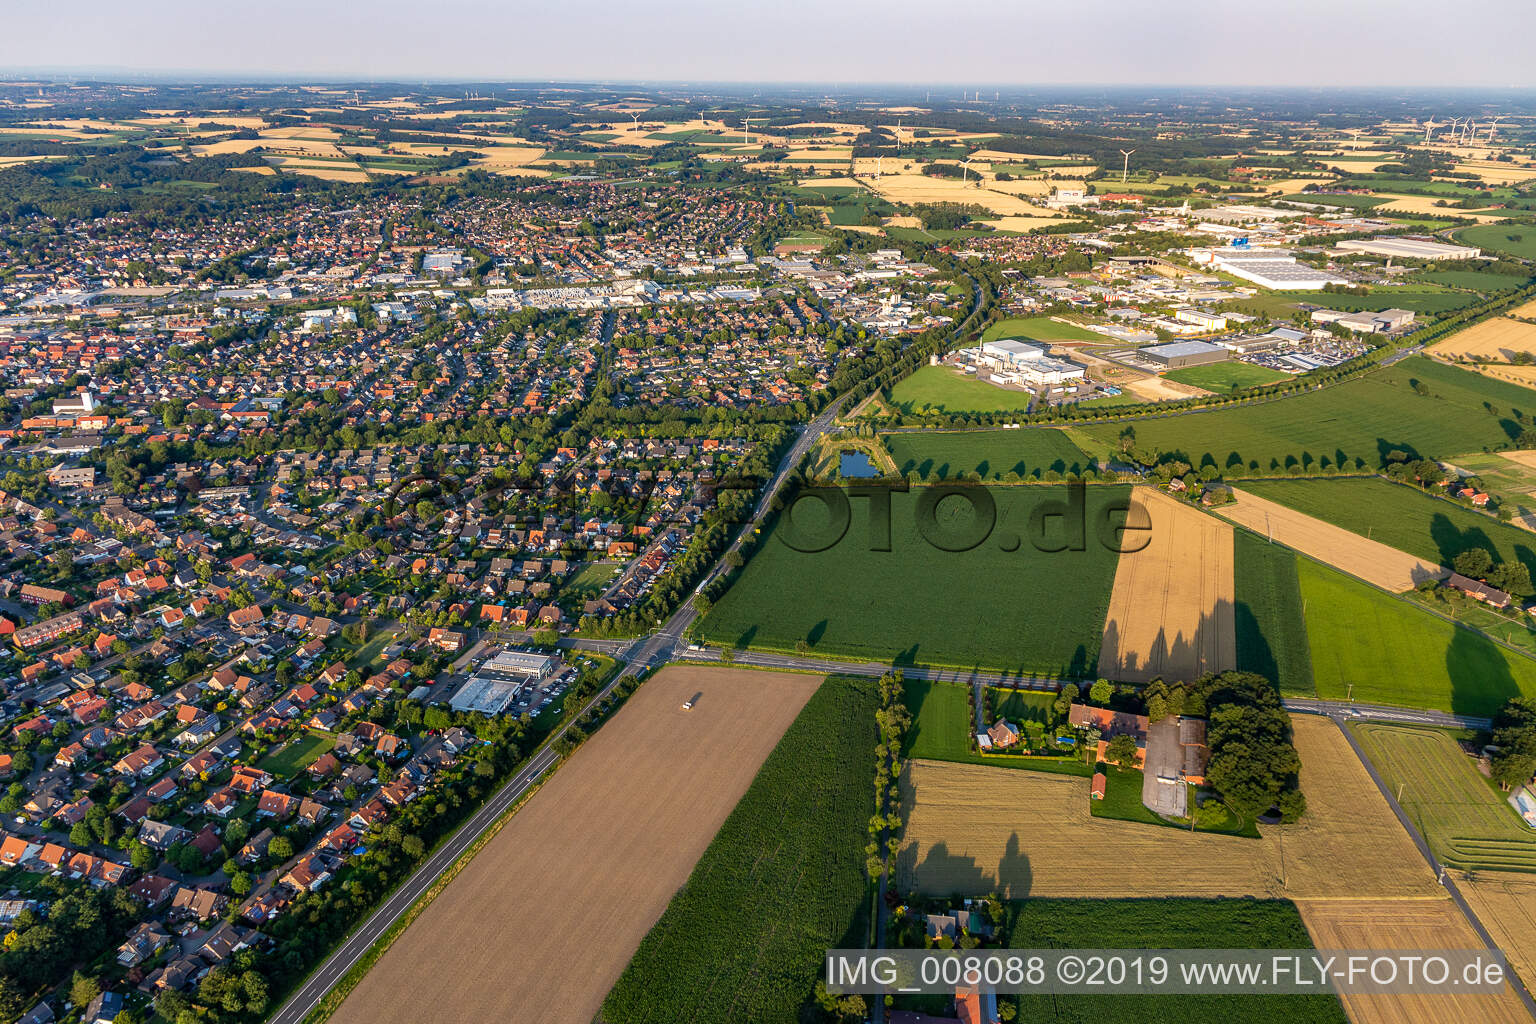 Aerial view of Coesfeld in the state North Rhine-Westphalia, Germany